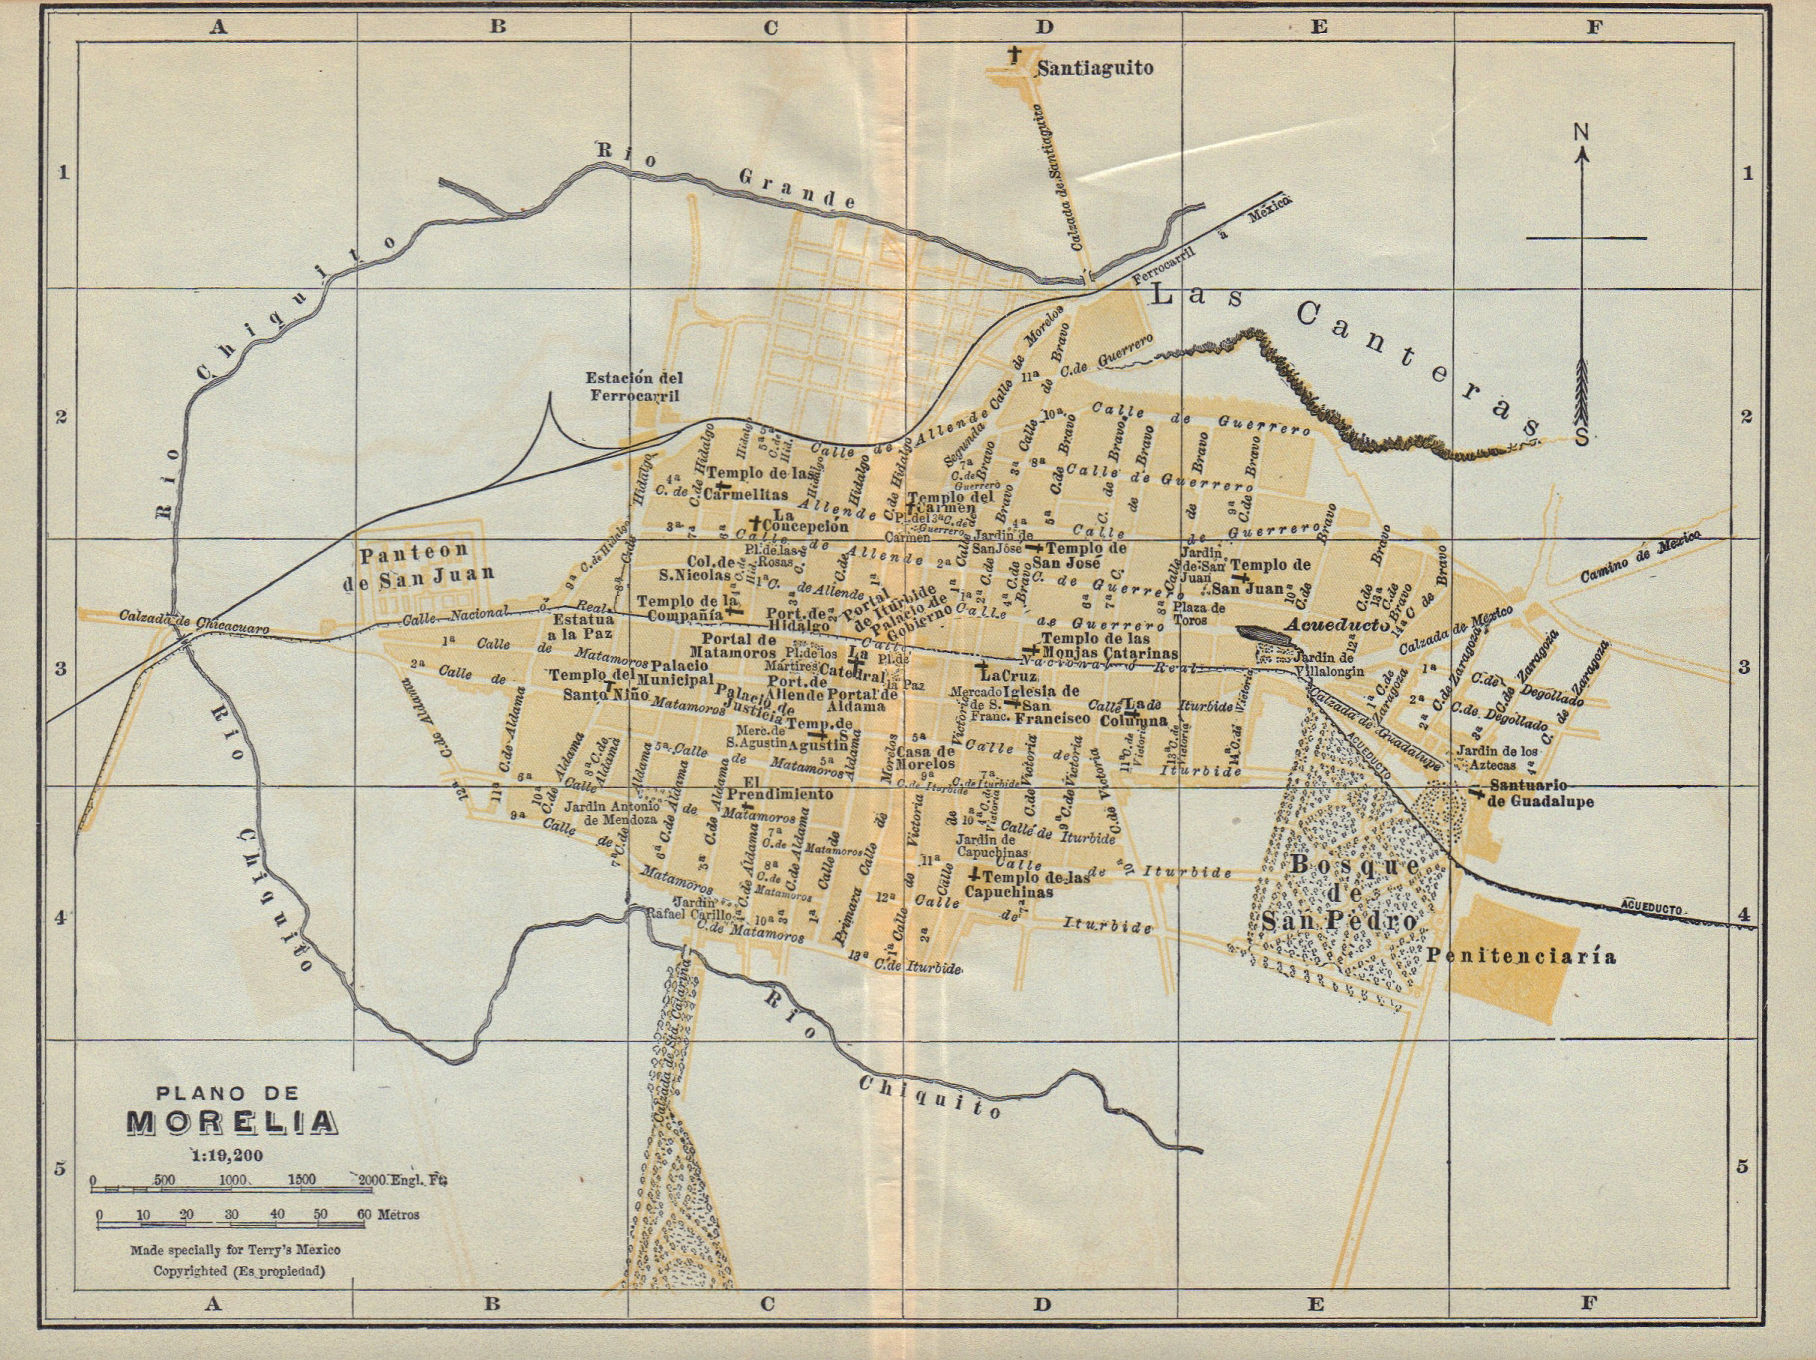 Associate Product Plano de MORELIA, Mexico. Mapa de la ciudad. City/town plan 1938 old